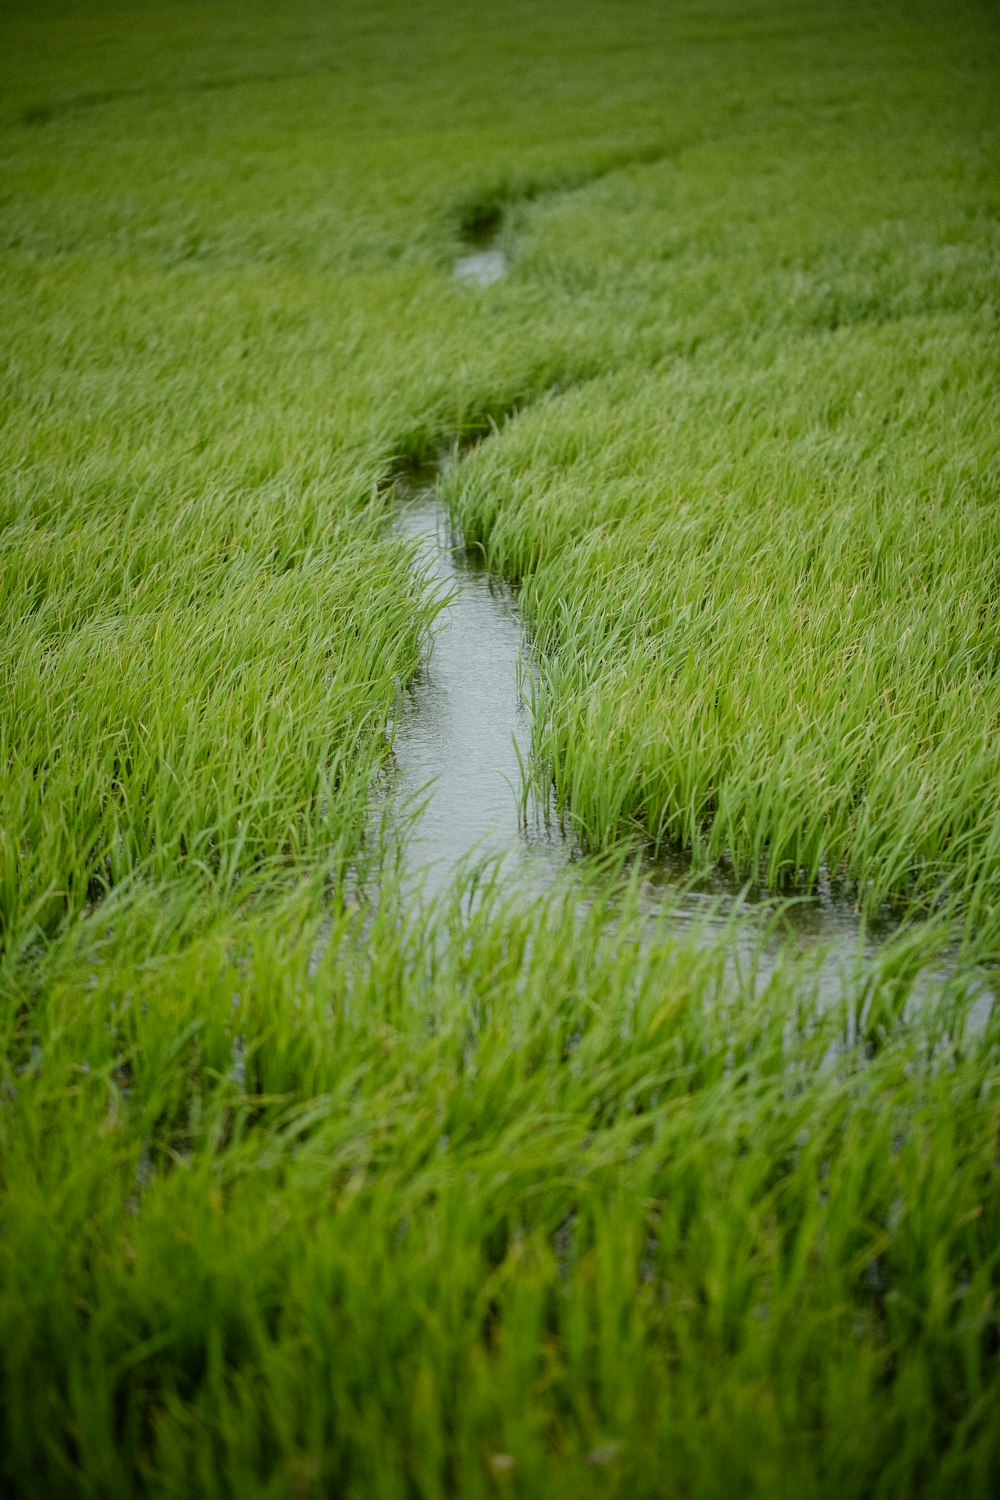 a stream running through a lush green field